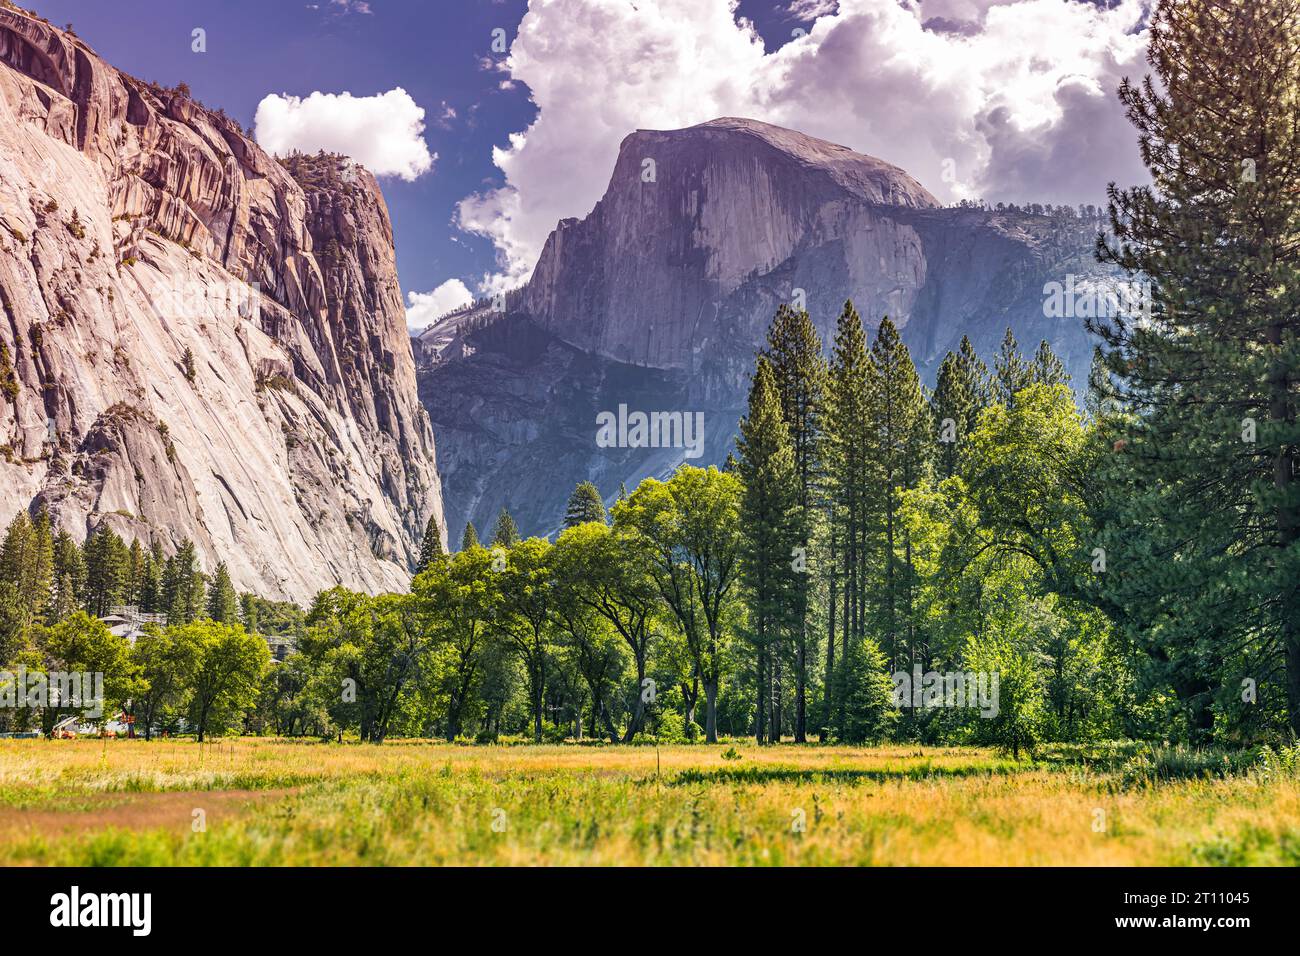 Half Dome ist ein beeindruckender Gipfel im Yosemite National Park, bekannt für seine unverwechselbare Form und atemberaubende Aussicht. Stockfoto